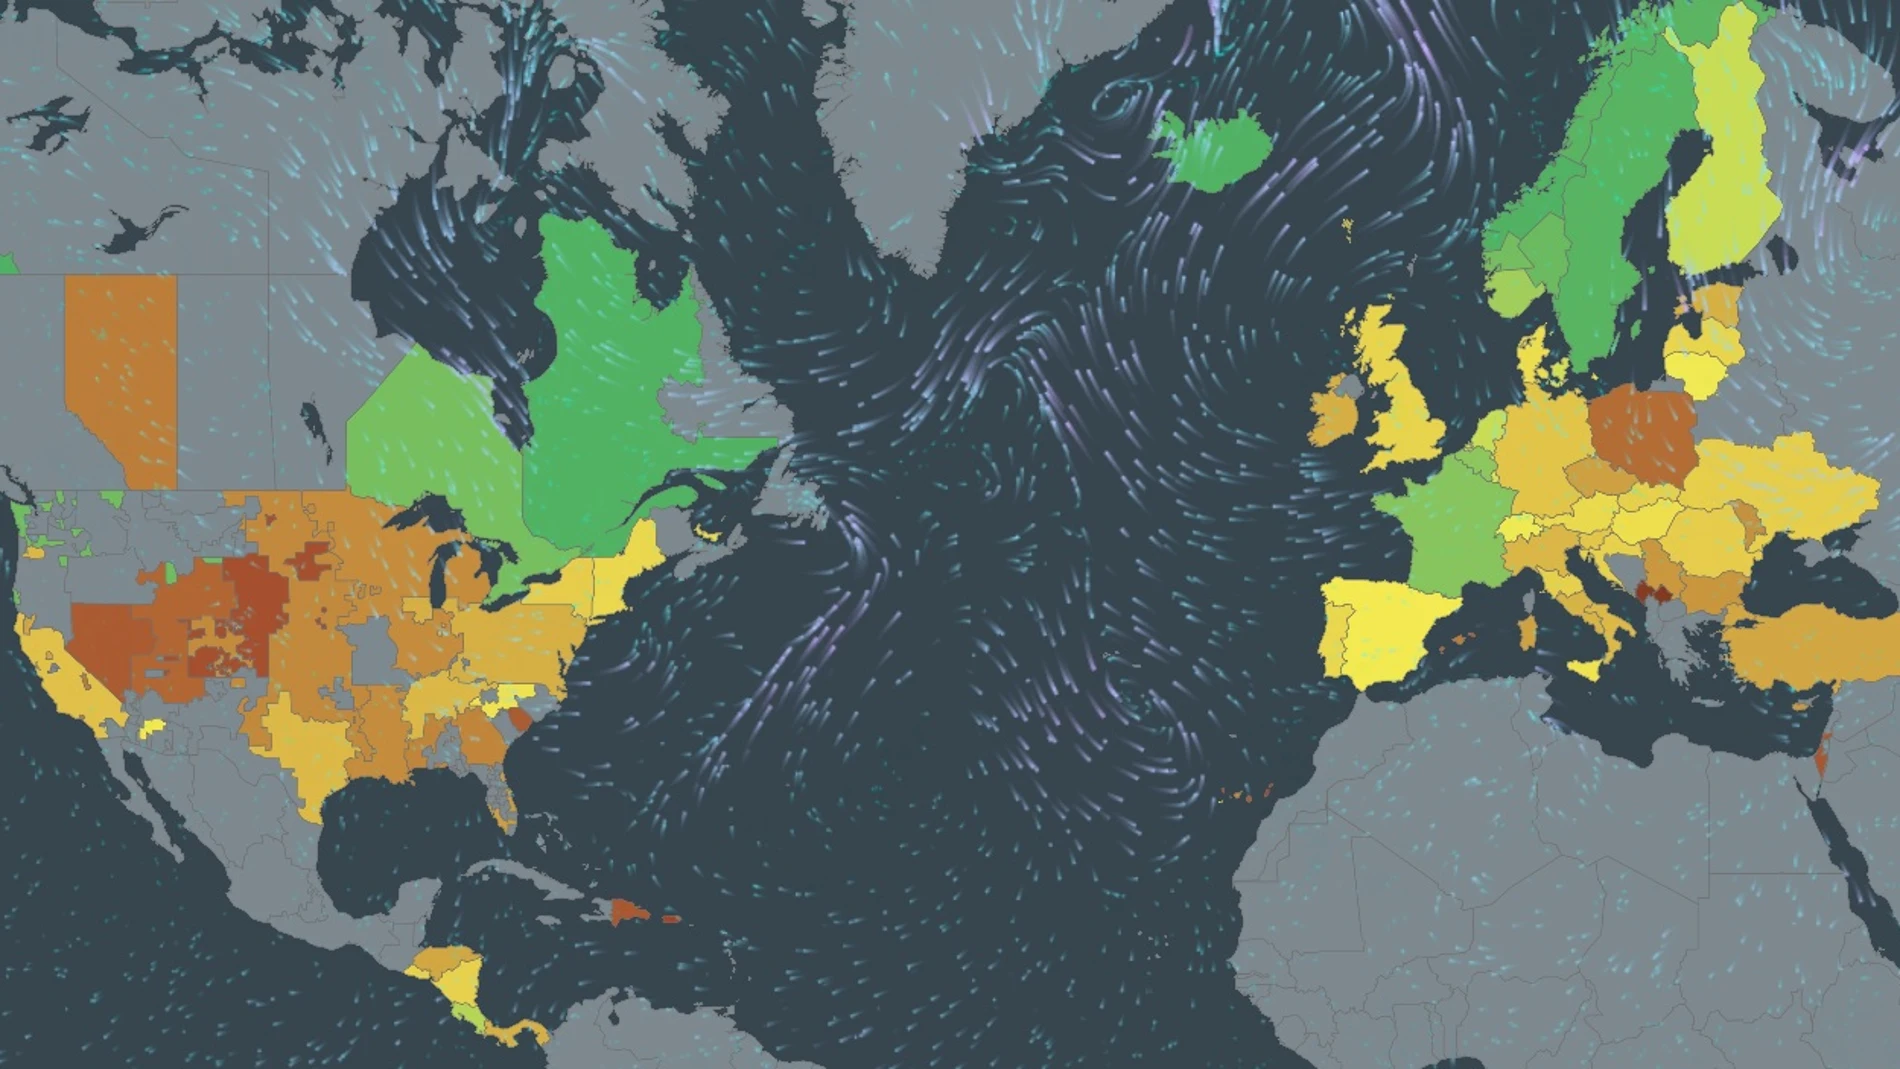 Mapa de " electricityMap" de las emisiones de CO2 de los países